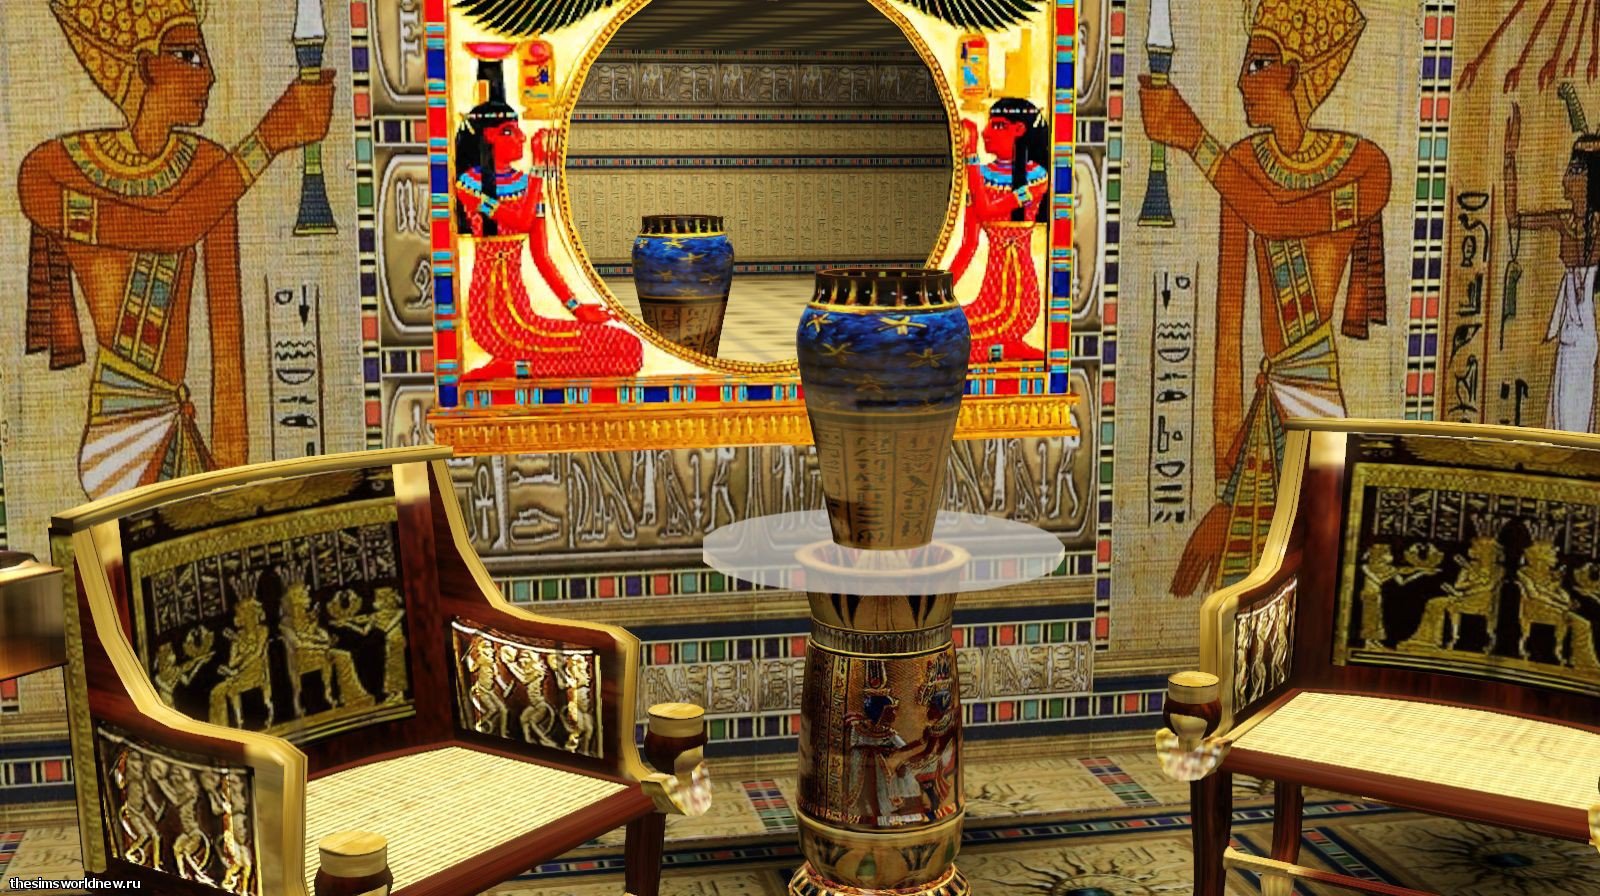 Быт в египте. Дворец фараона в древнем Египте. Мебель фараона древний Египет. Древнеегипетская мебель фараонов. Интерьер дворца фараона Египта.